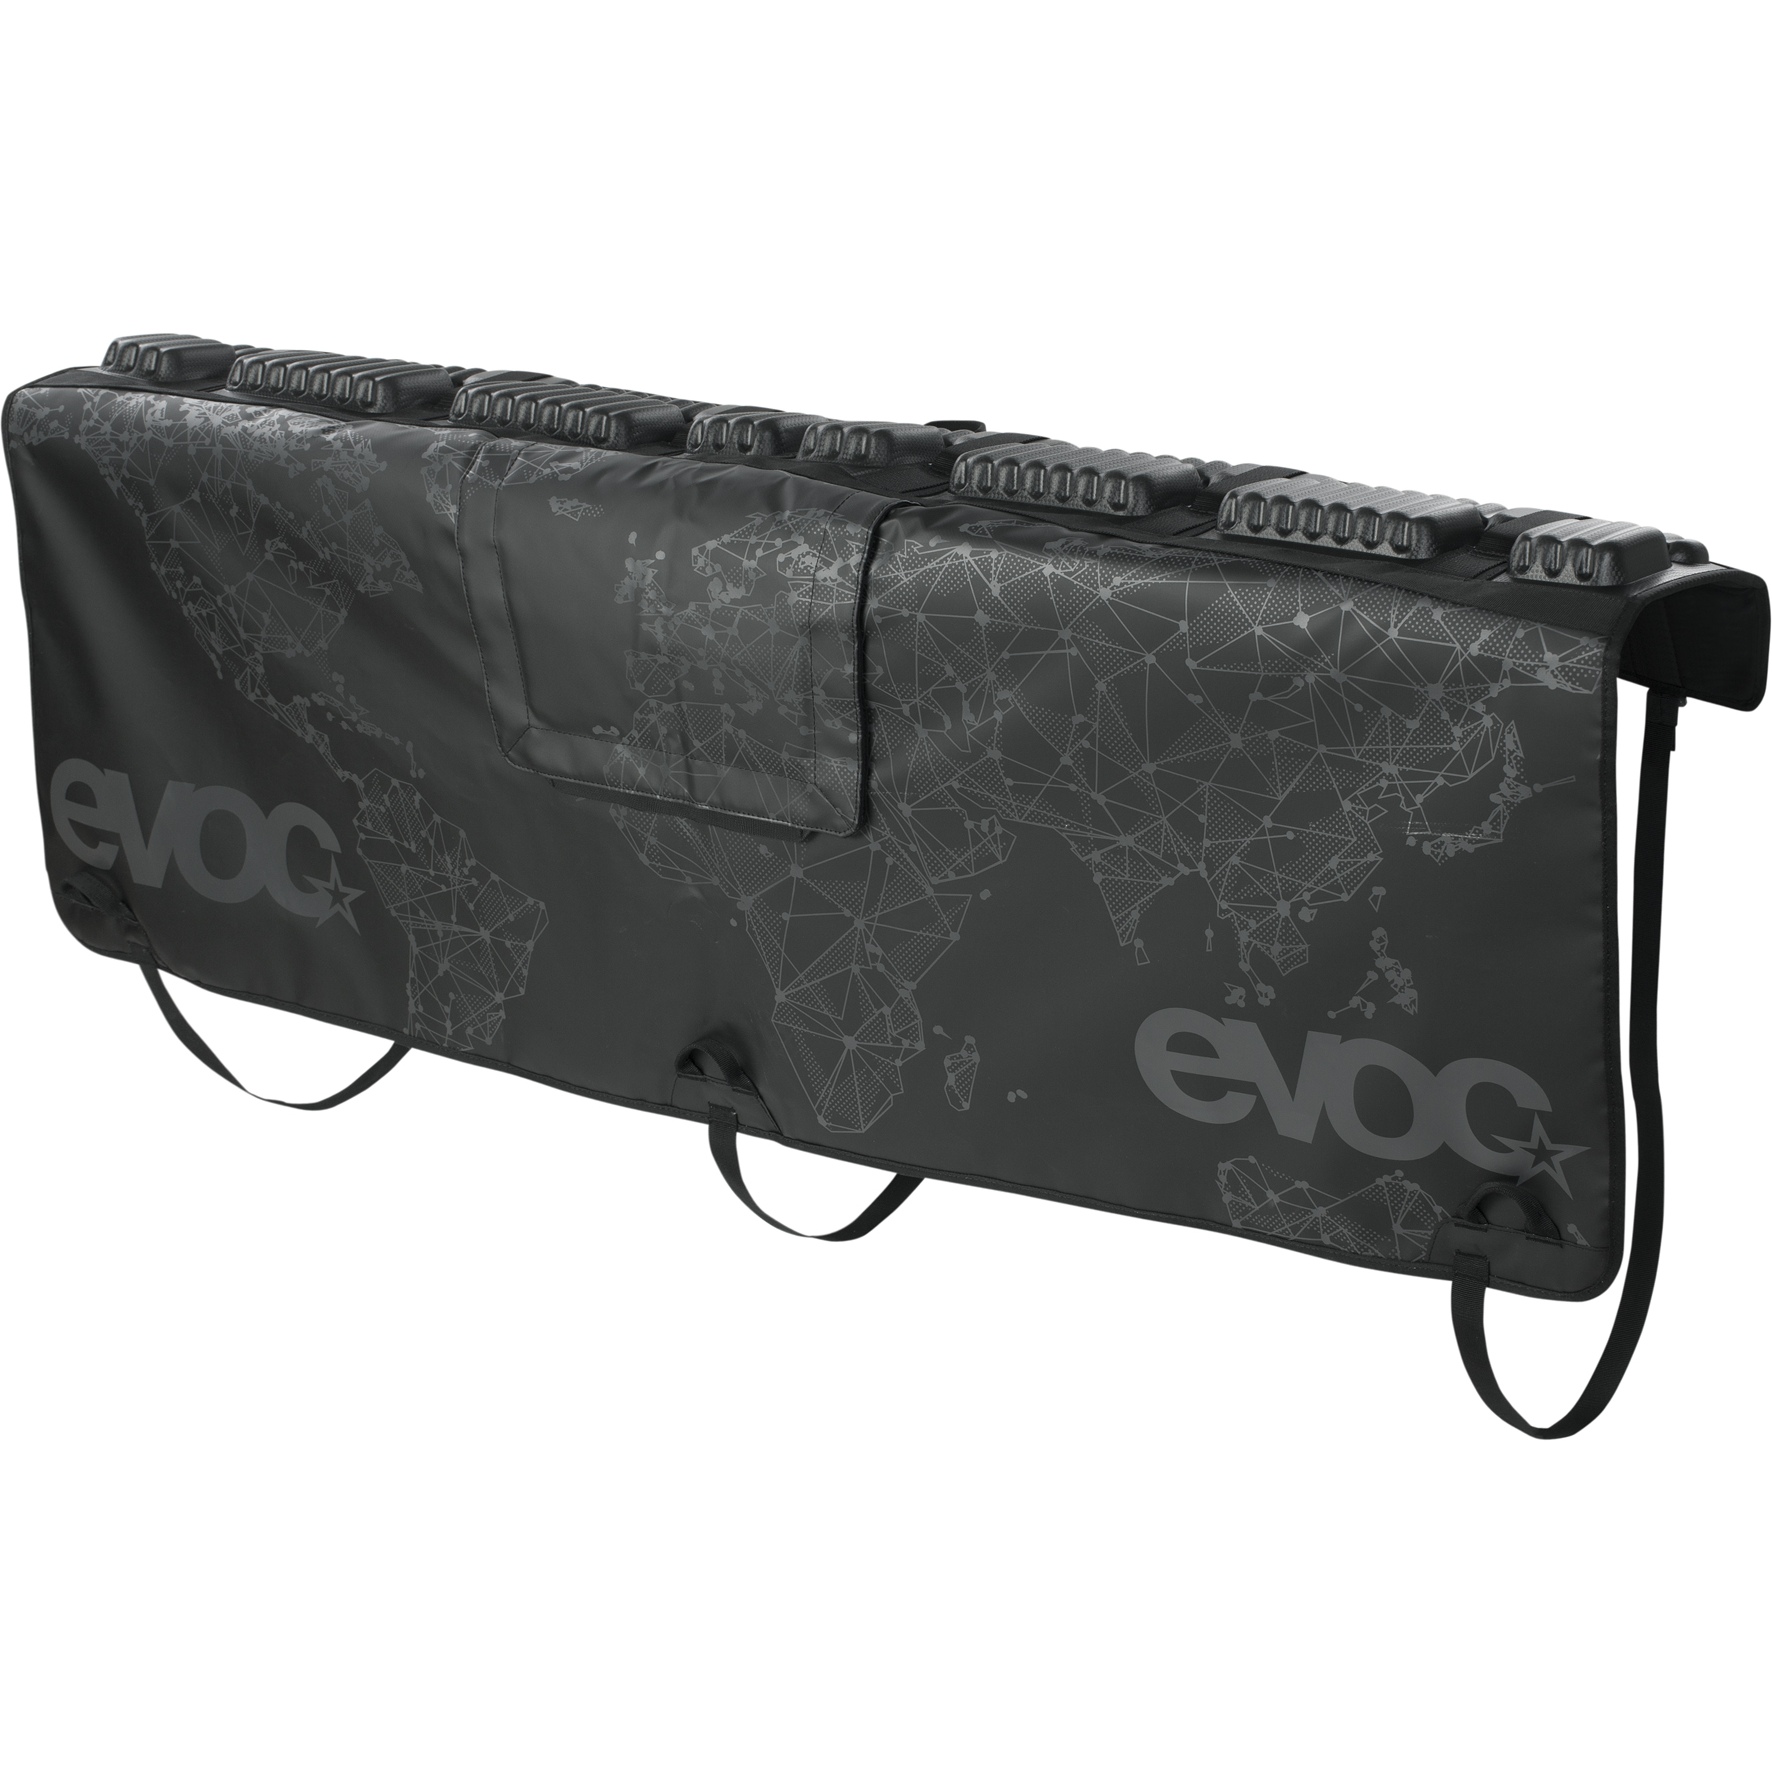 Productfoto van EVOC Tailgate Pad Curve - Bescherming voor de Achterklep - Maat XL - Zwart